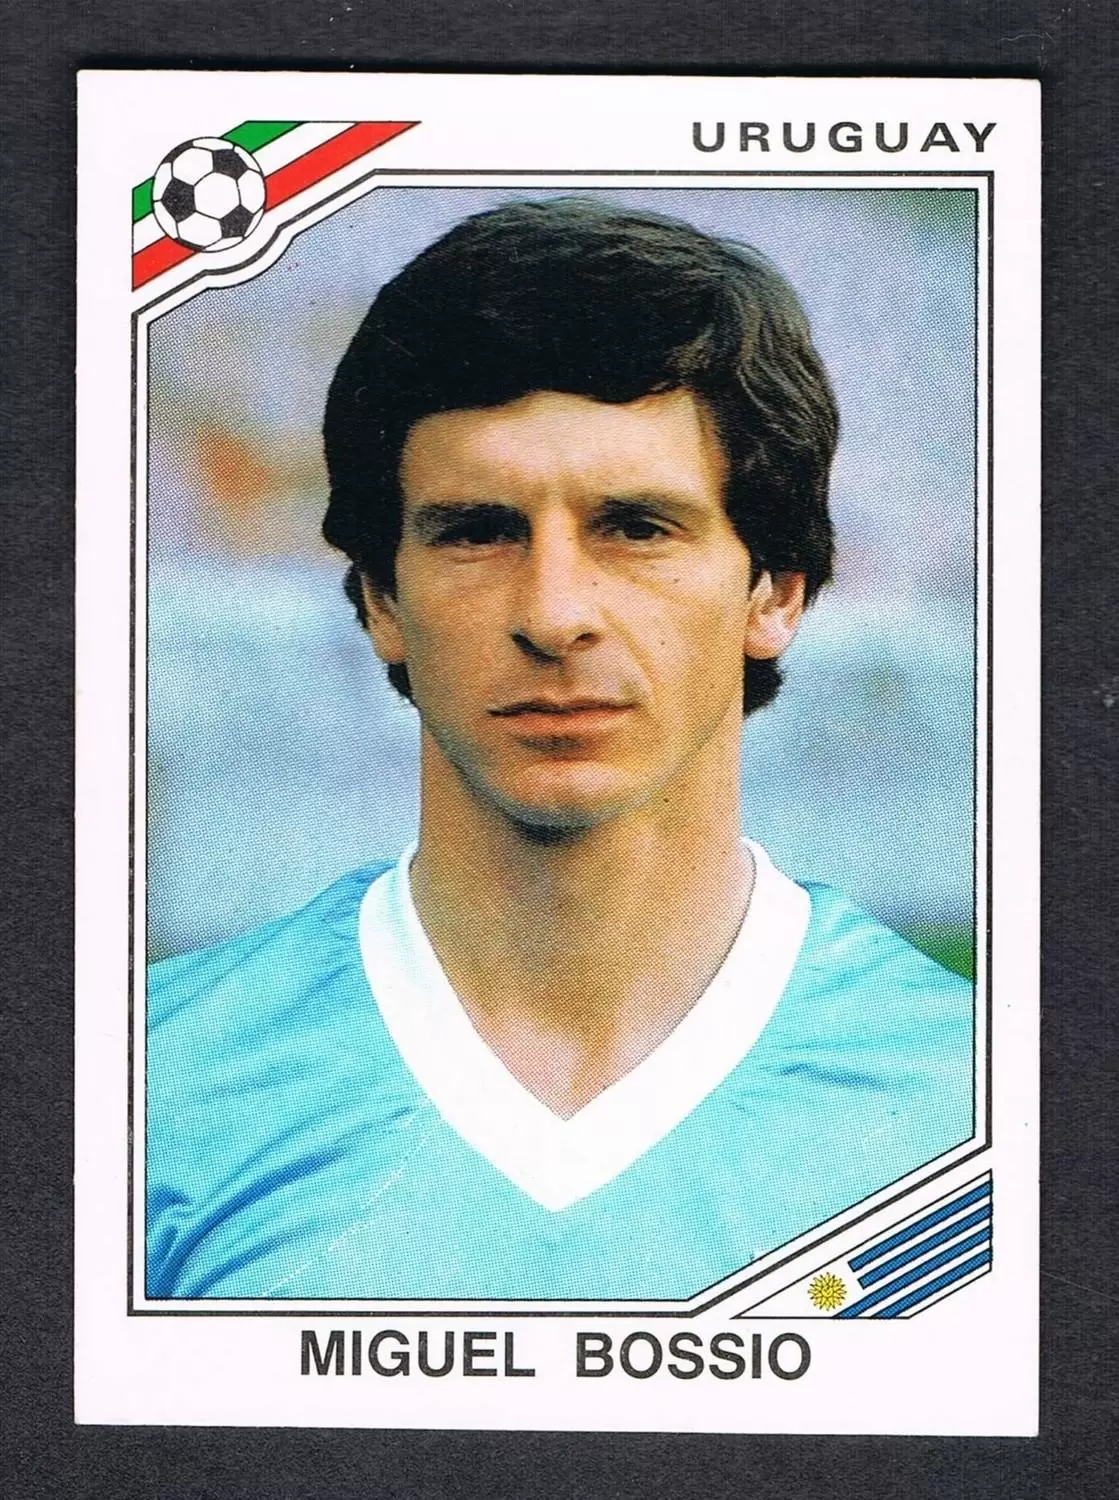 Mexico 86 World Cup - Miguel Bossio - Uruguay